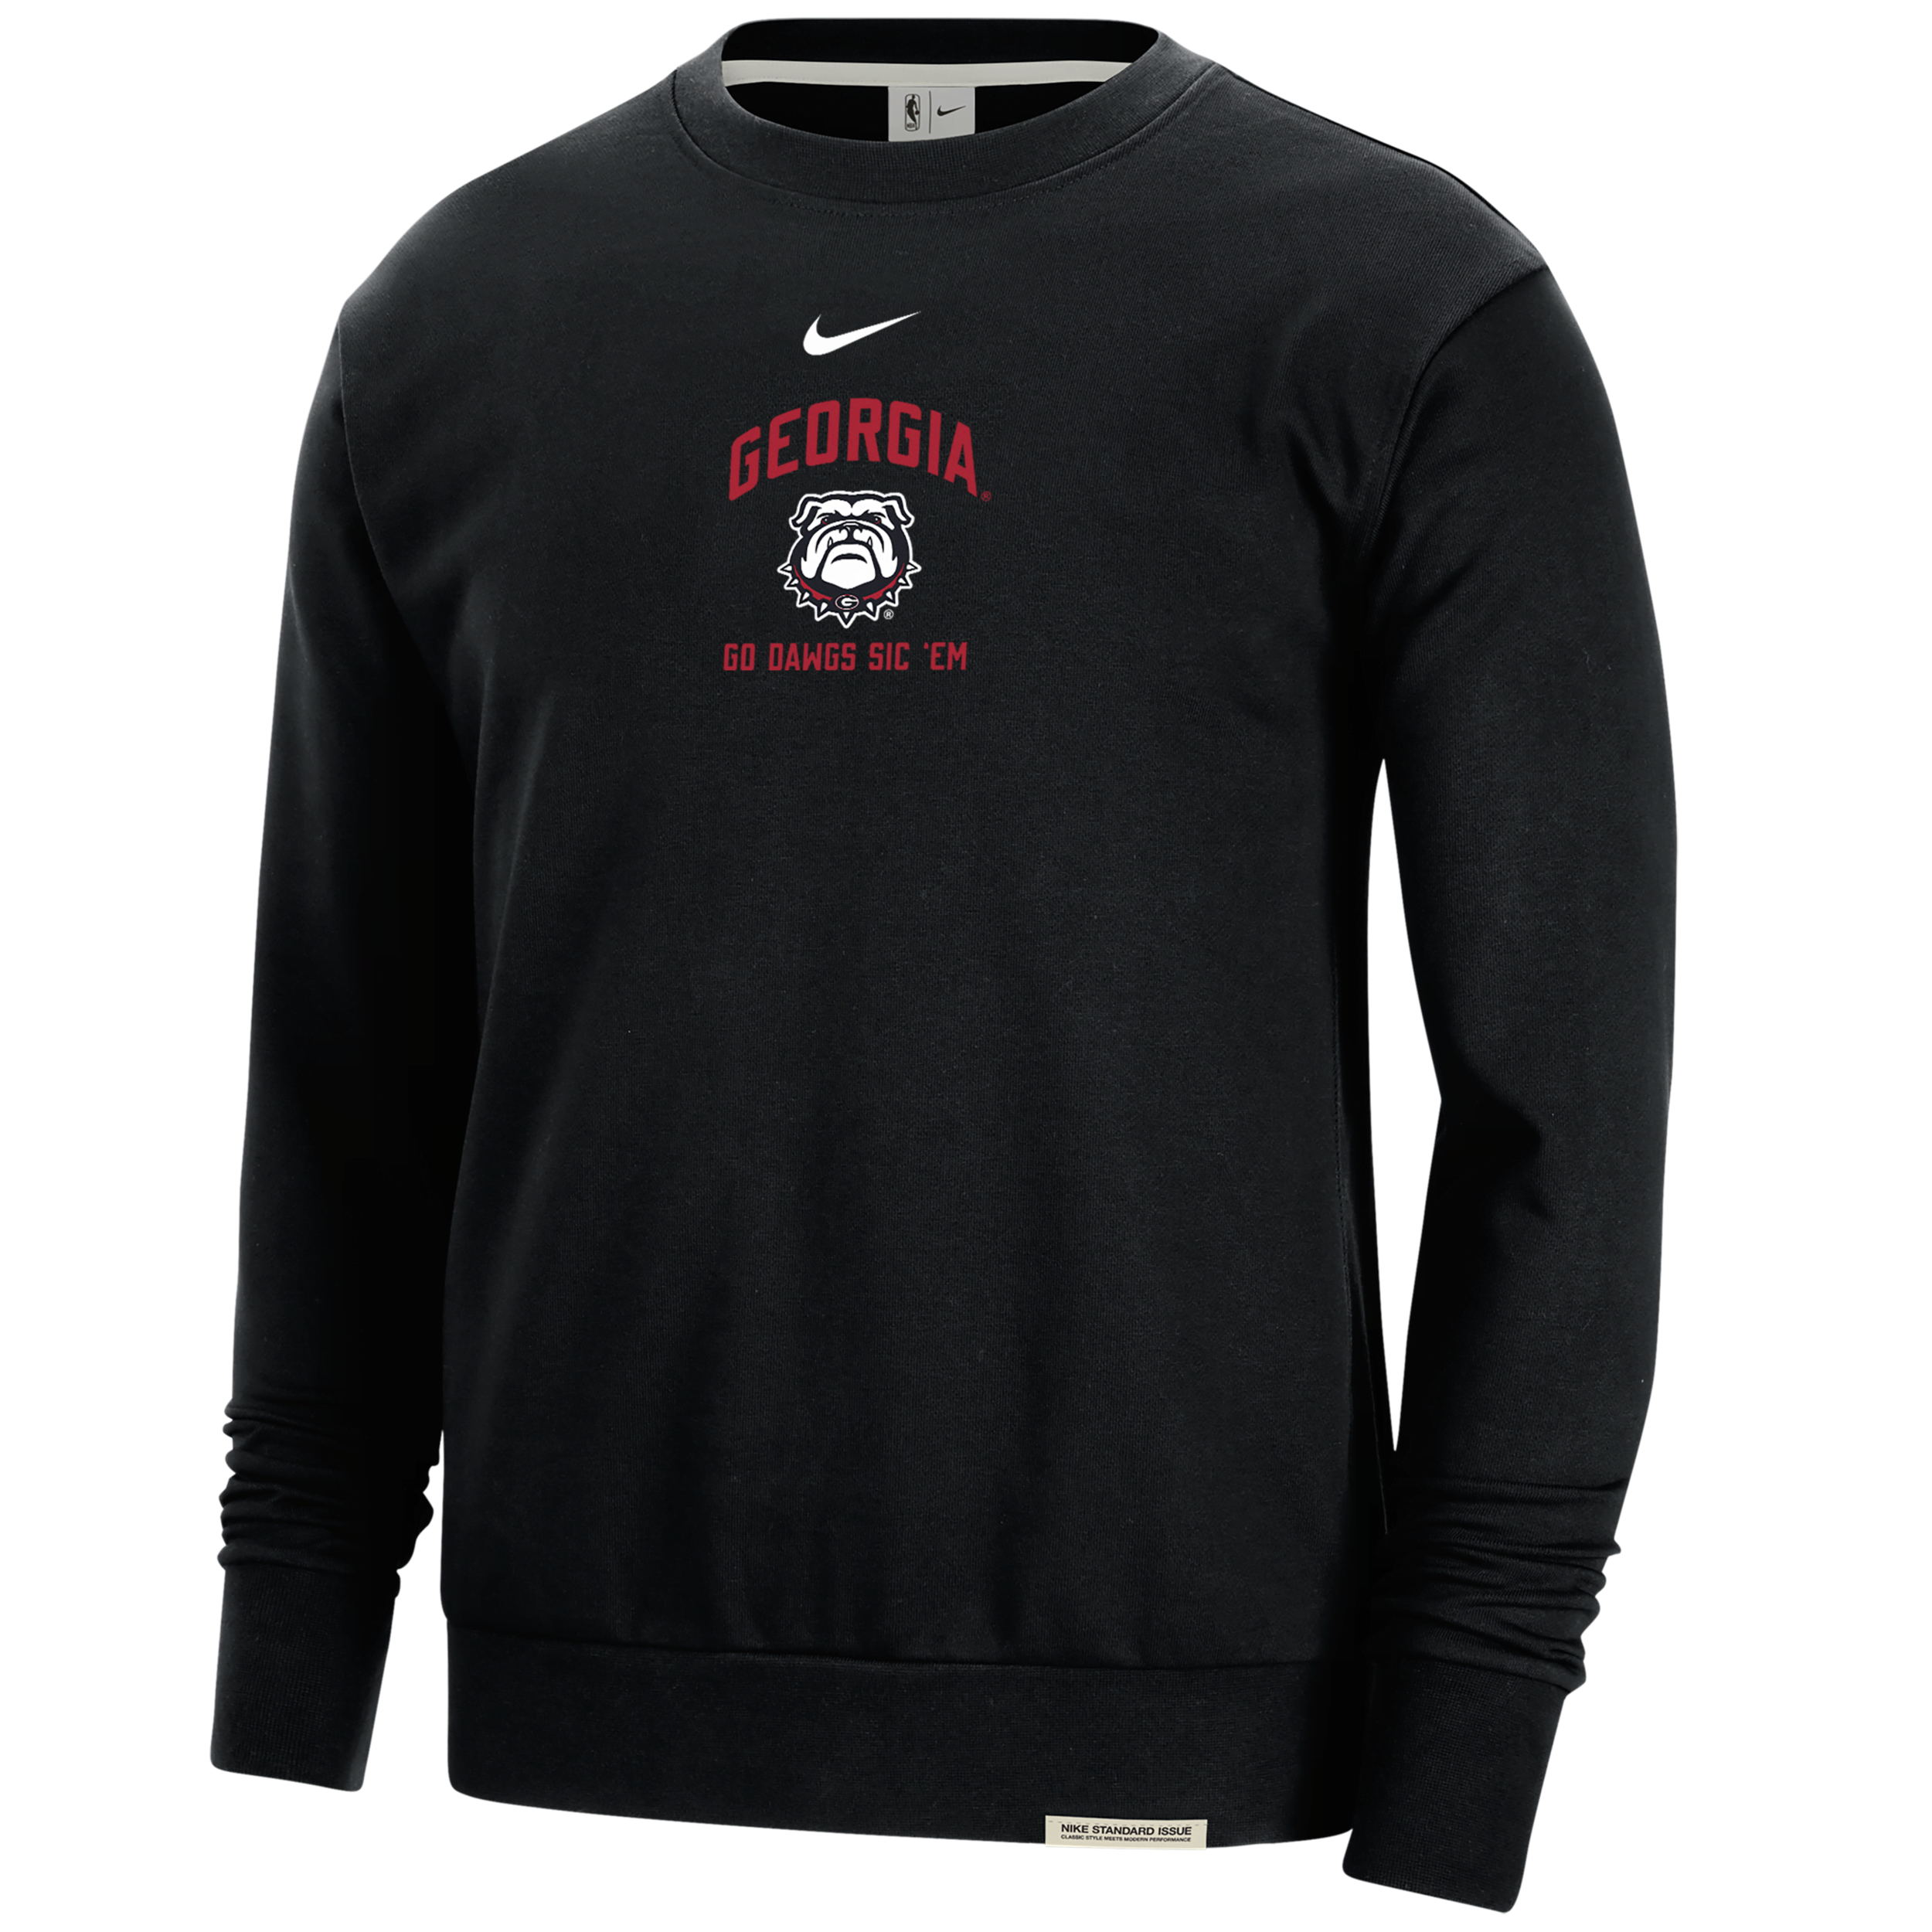 Nike Georgia Standard Issue  Men's College Fleece Crew-neck Sweatshirt In Black